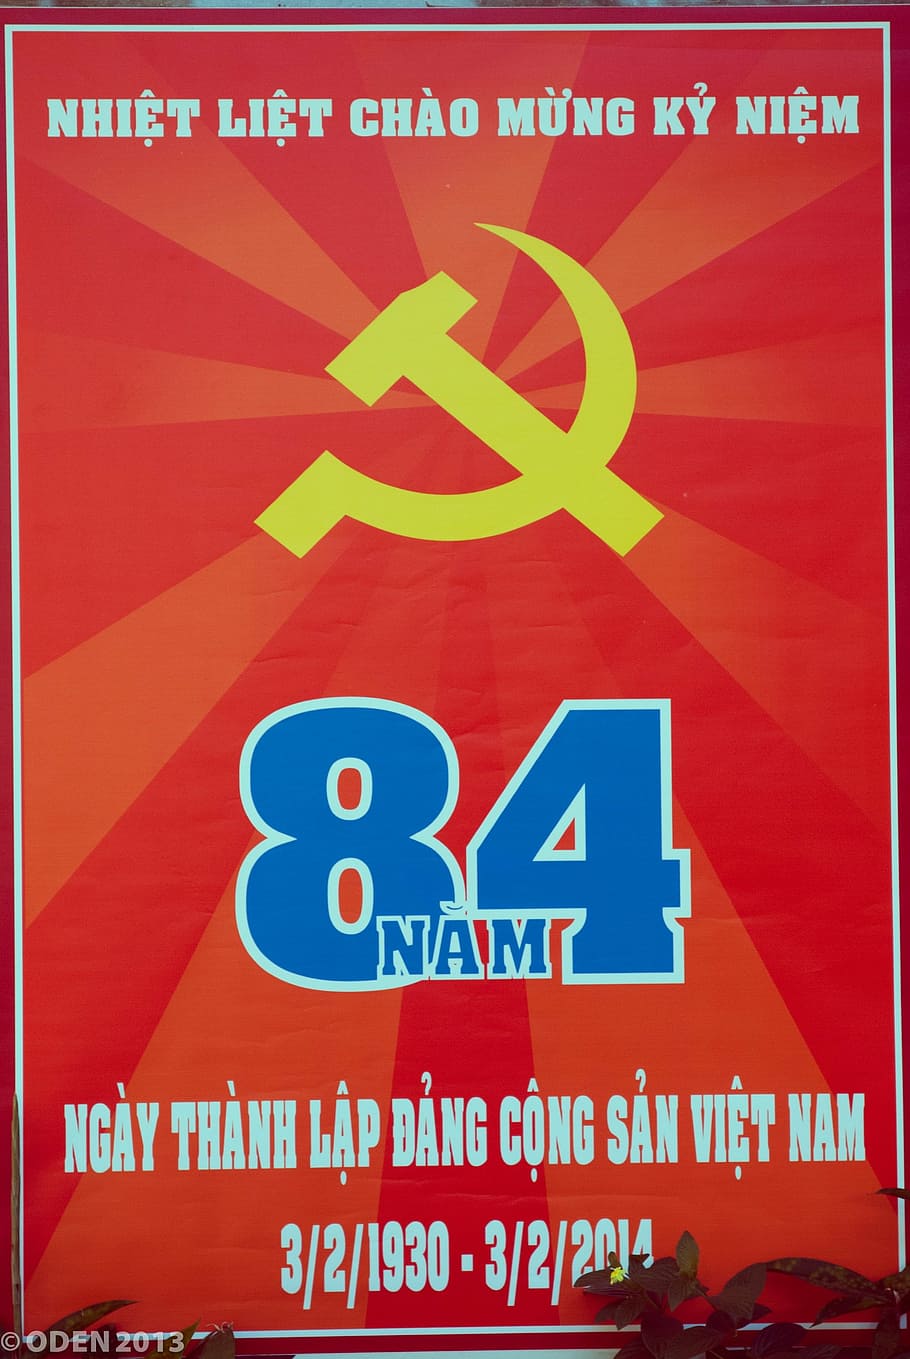 vietnam, saigon, ho chi minh city, vector, illustration, sign